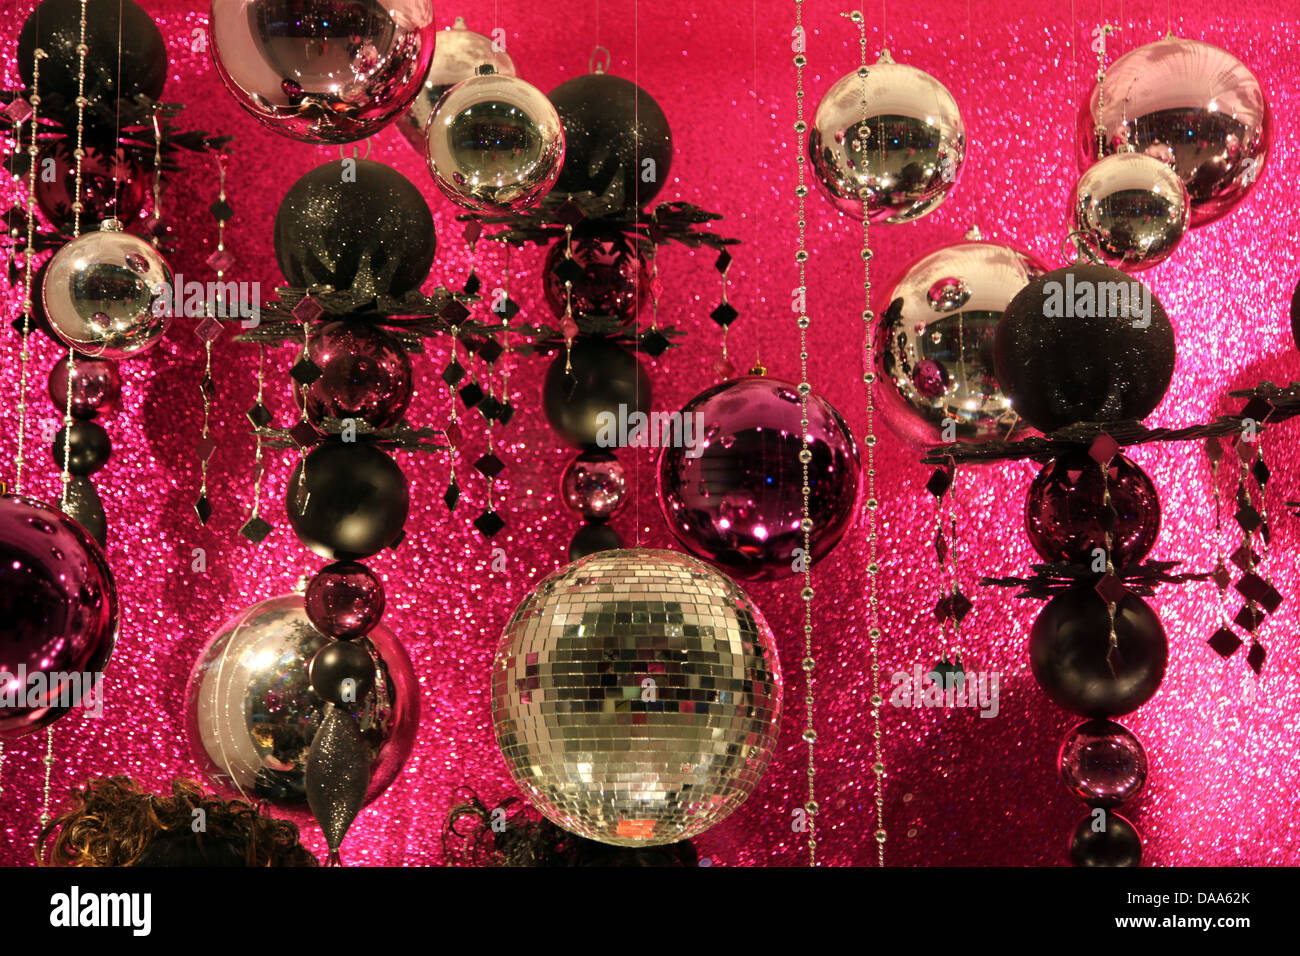 C'est une photo d'un grand nombre de boule disco ou boules miroirs qui sont contre un arrière-plan brillant broche étincelante, décoration de Noël Banque D'Images